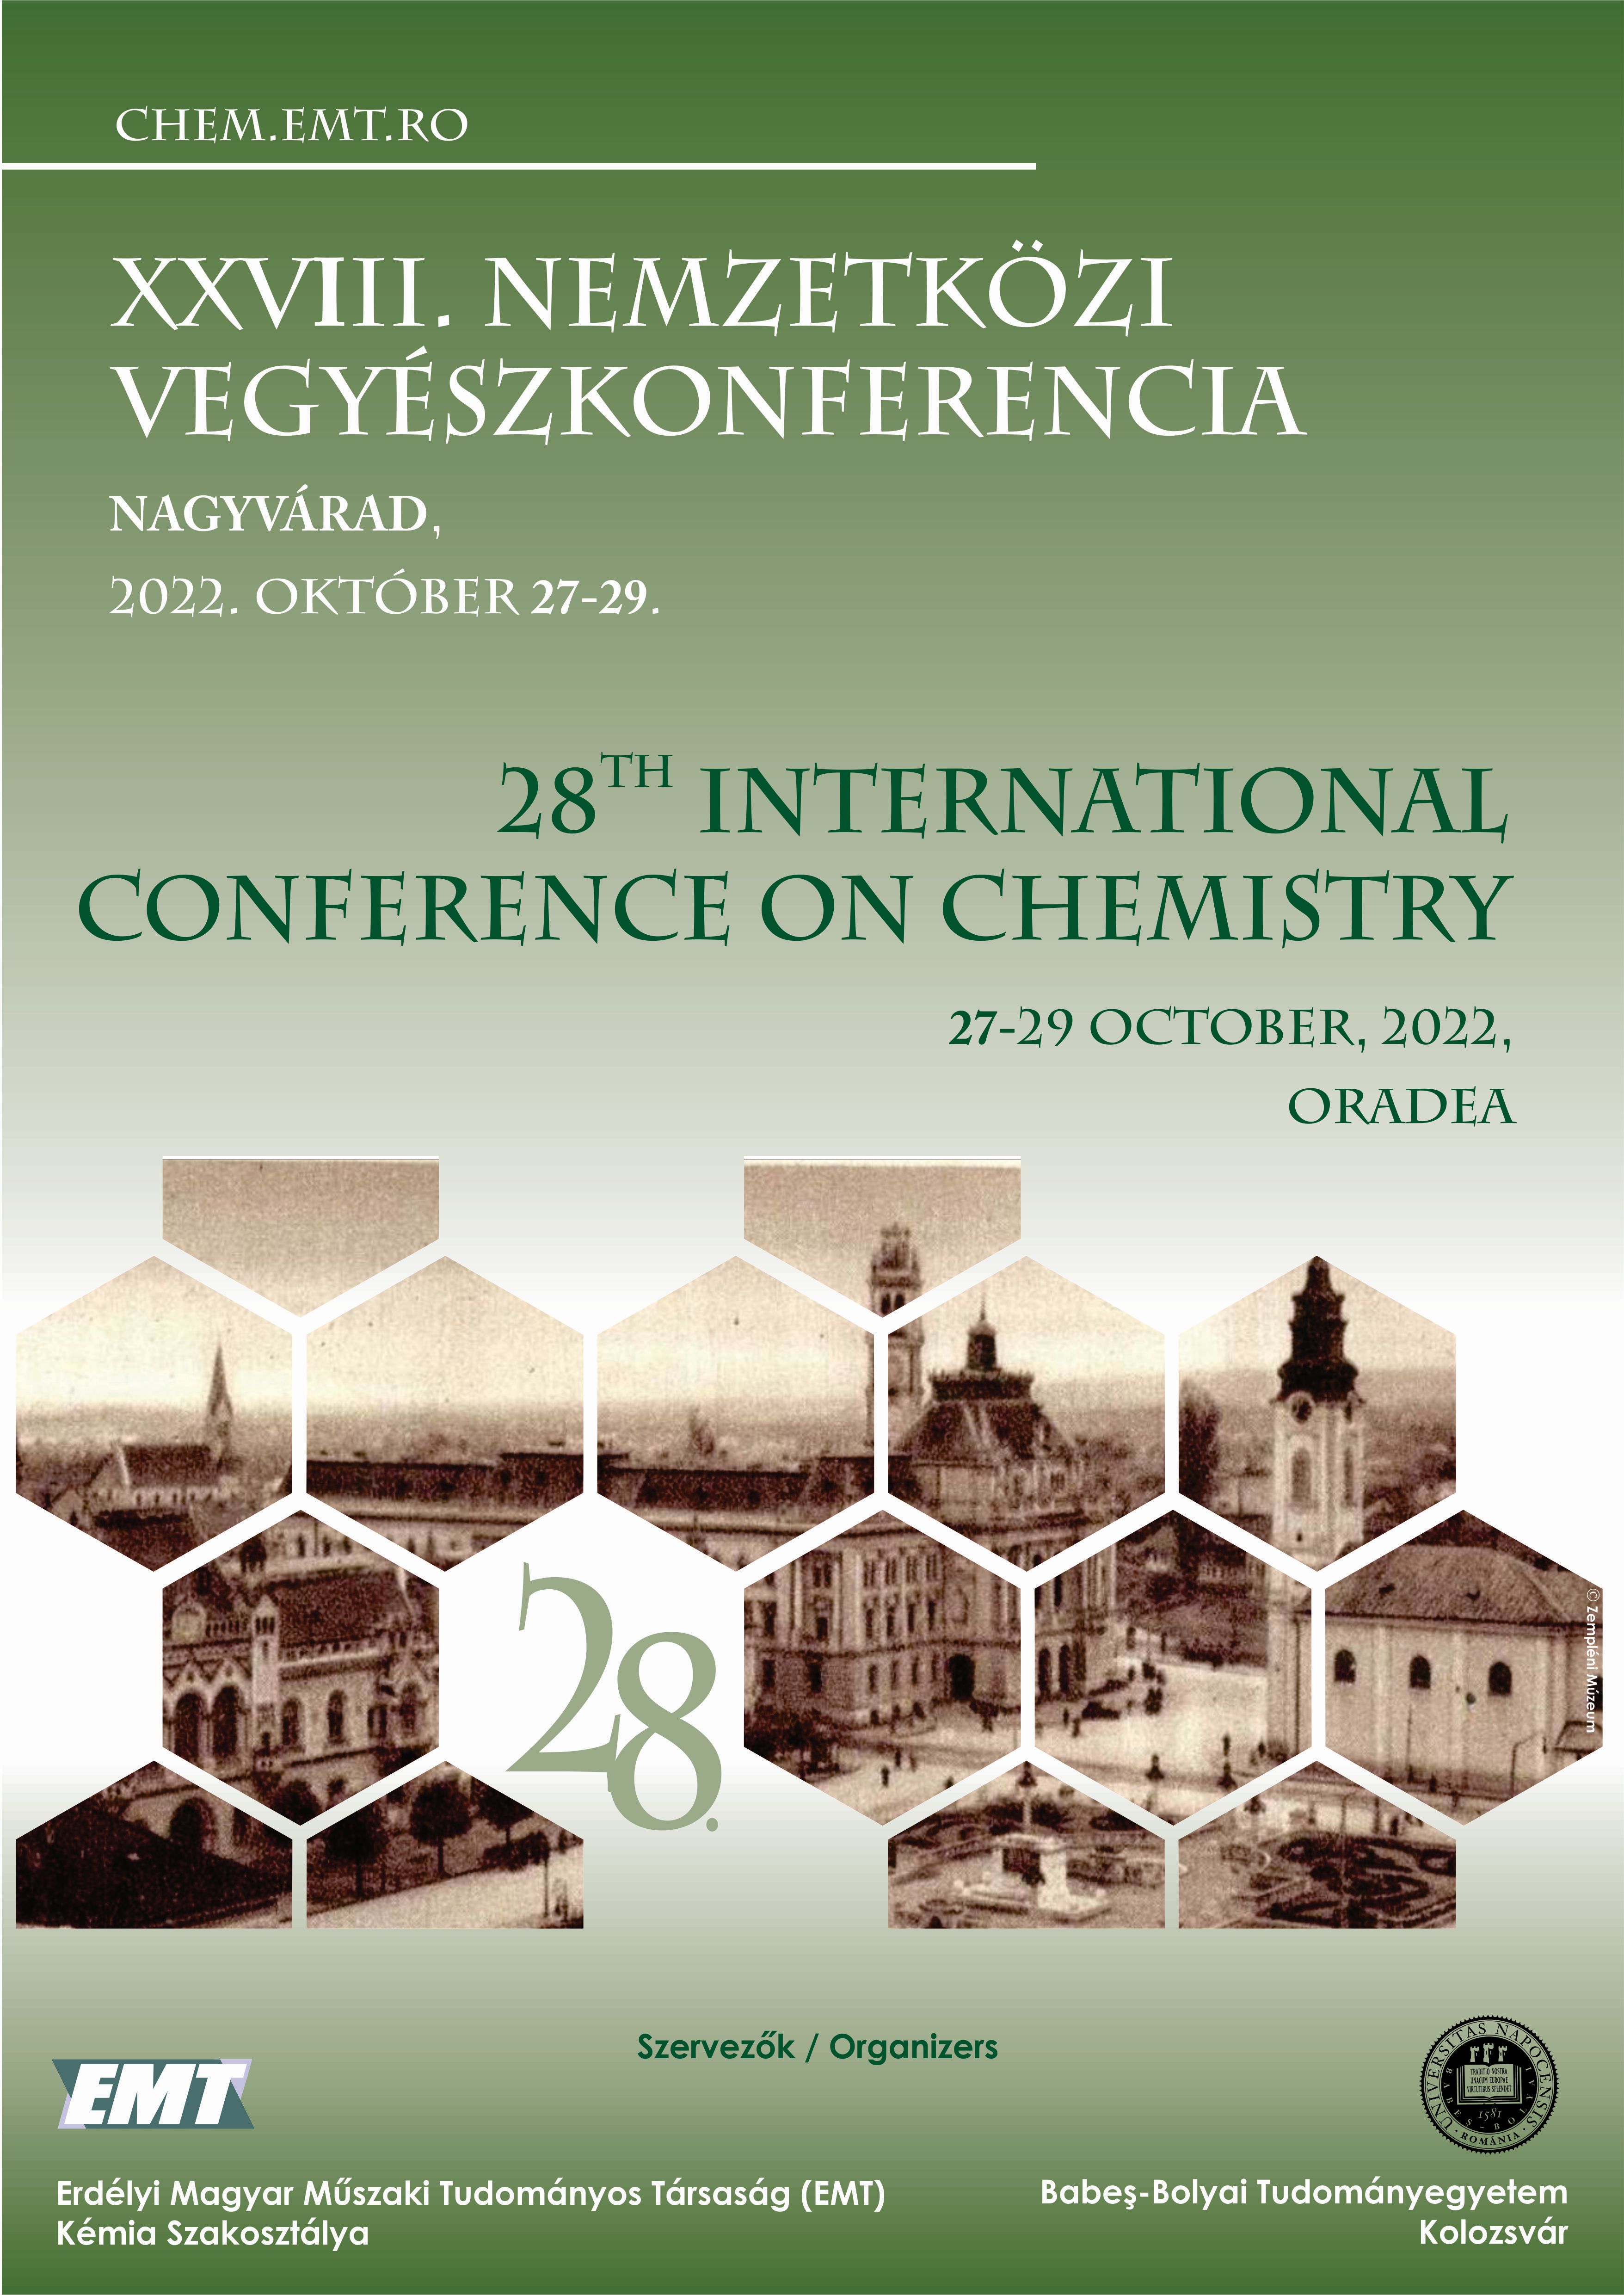 					View XXVIII. Nemzetközi Vegyészkonferencia / 28th International Conference on Chemistry
				